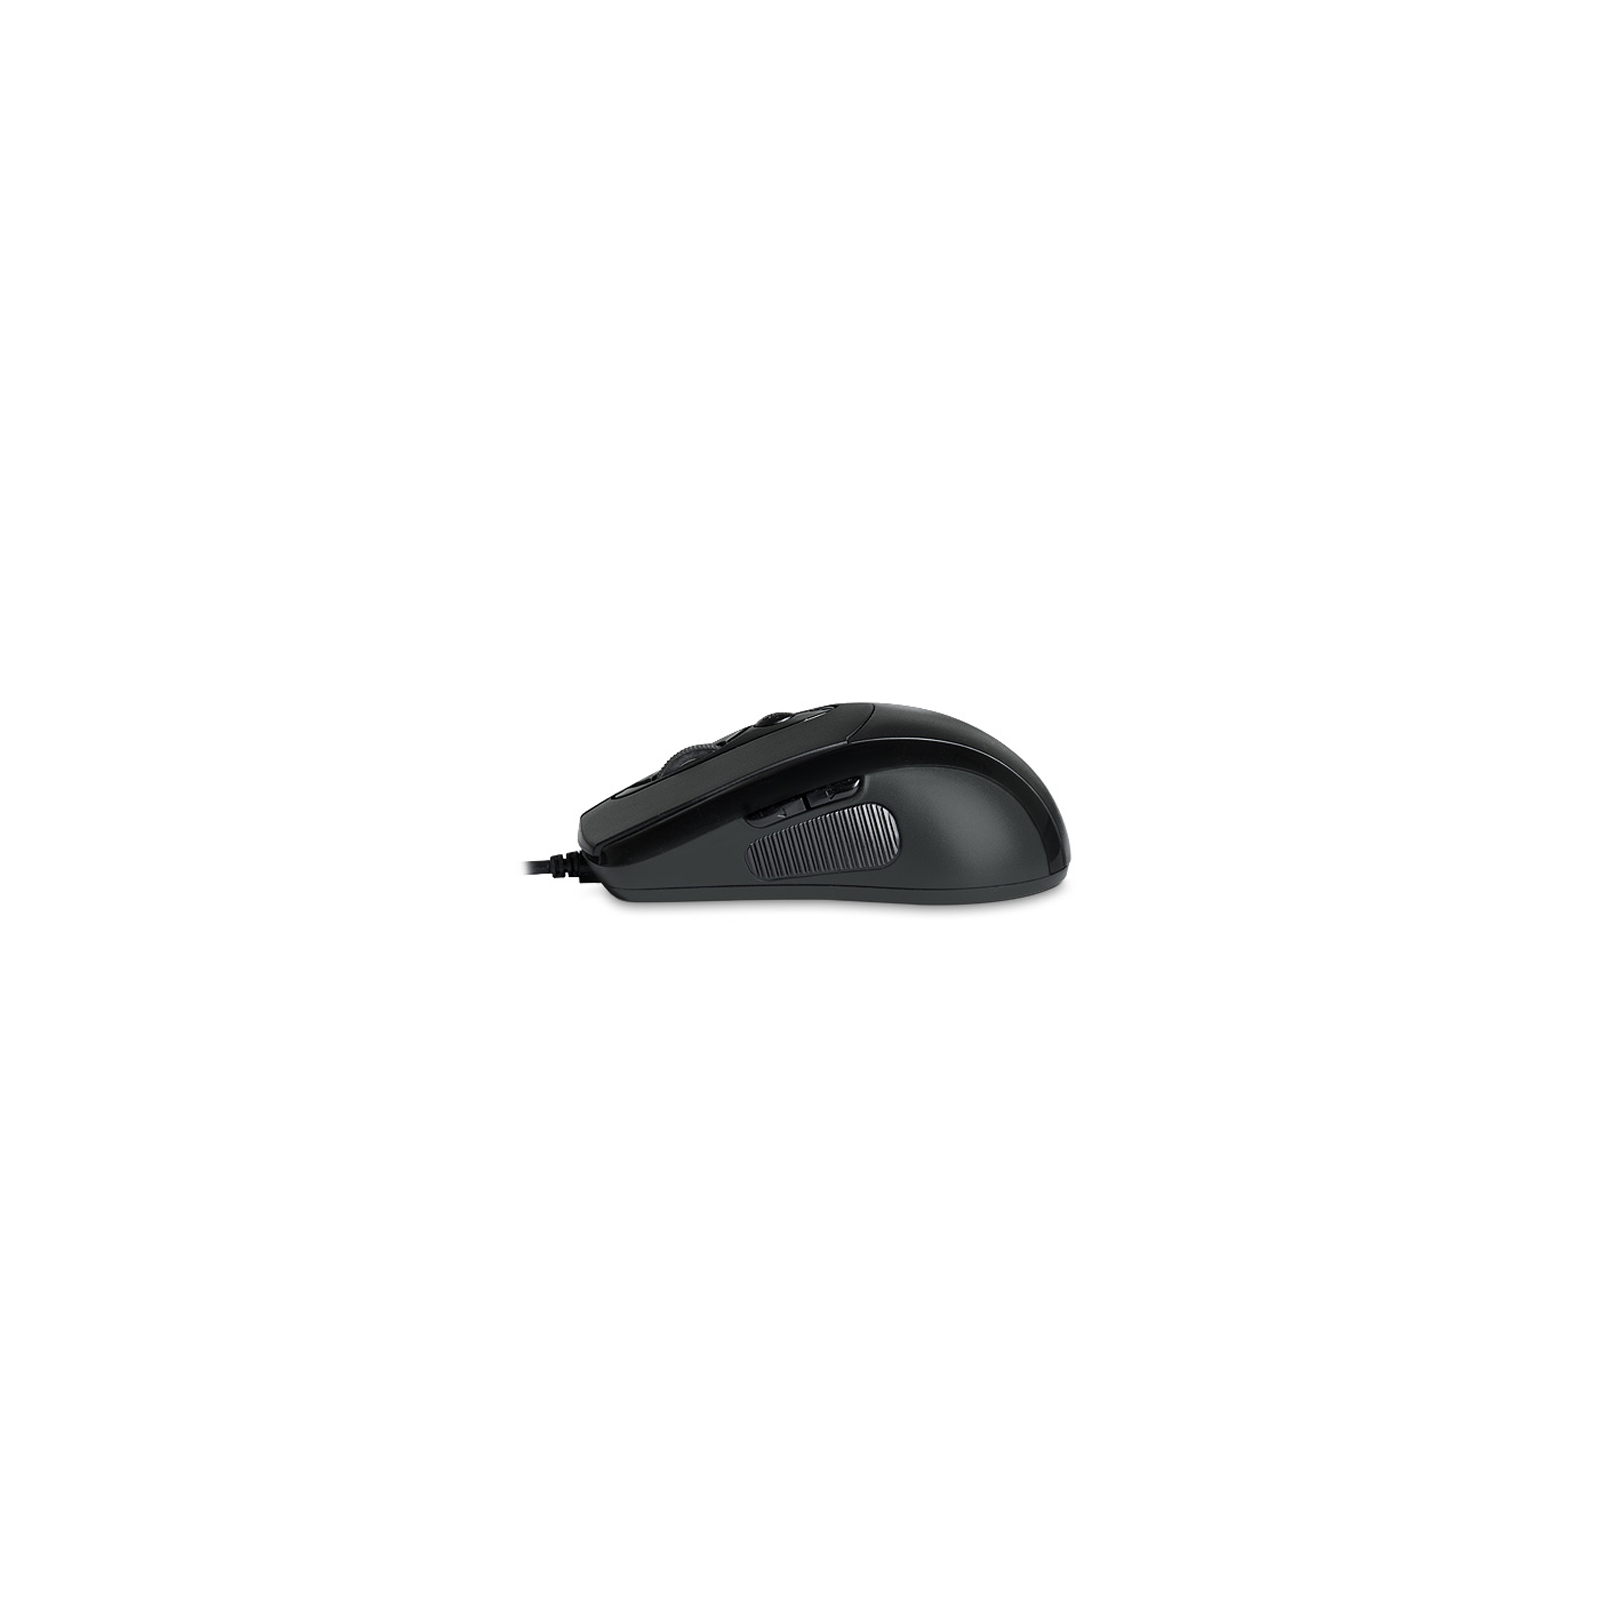 Мышка REAL-EL RM-290, USB, black изображение 3